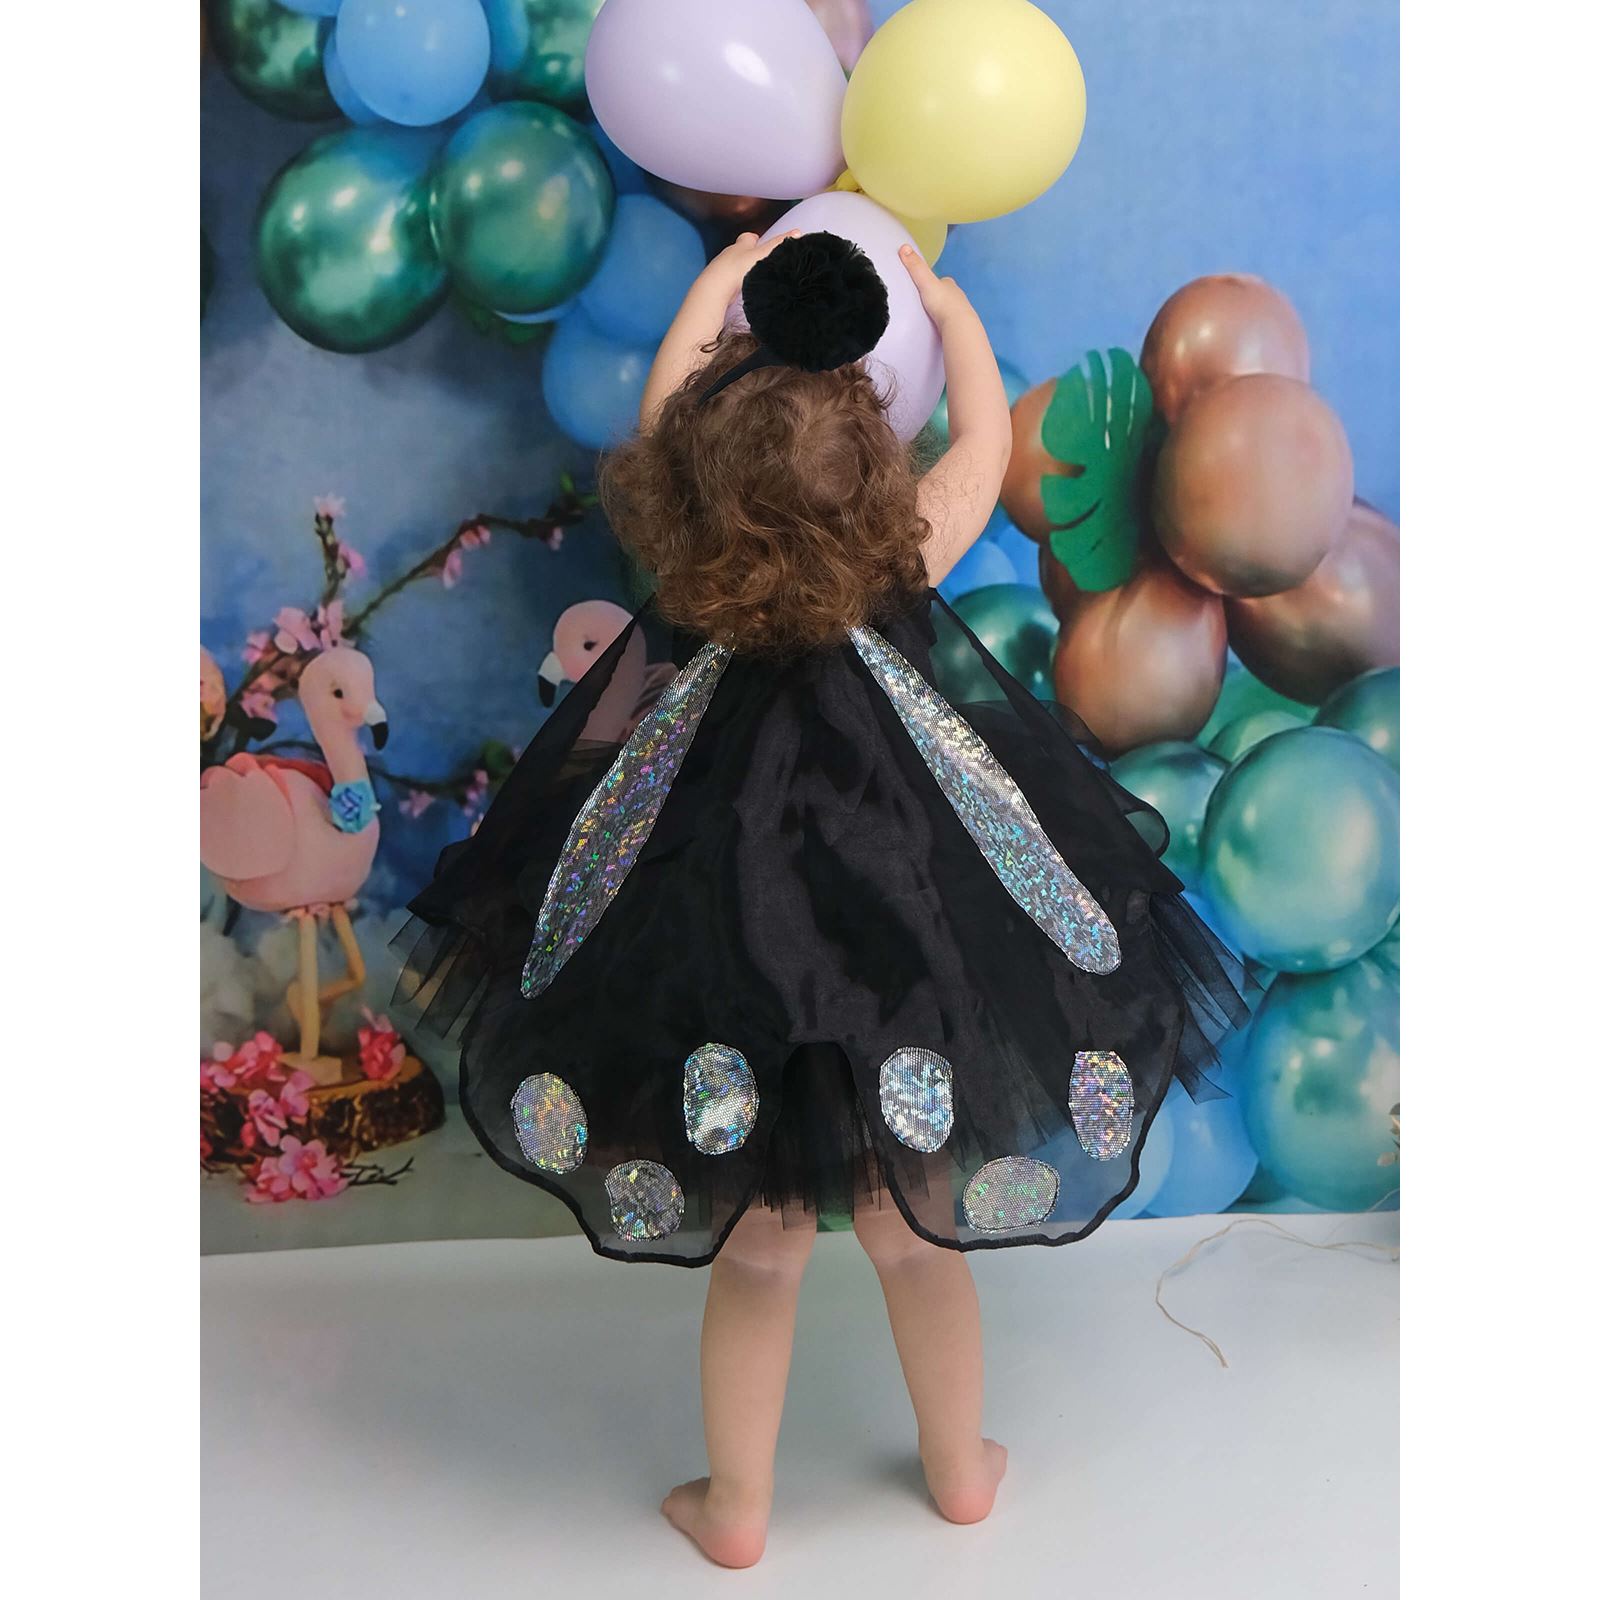 Shecco Babba Balerin Model Kız Çocuk Tütü Elbise, Kelebek Pelerin ve Bandana Takımı - Çocuk Abiye Elbise 1-5 Yaş Abiye Siyah